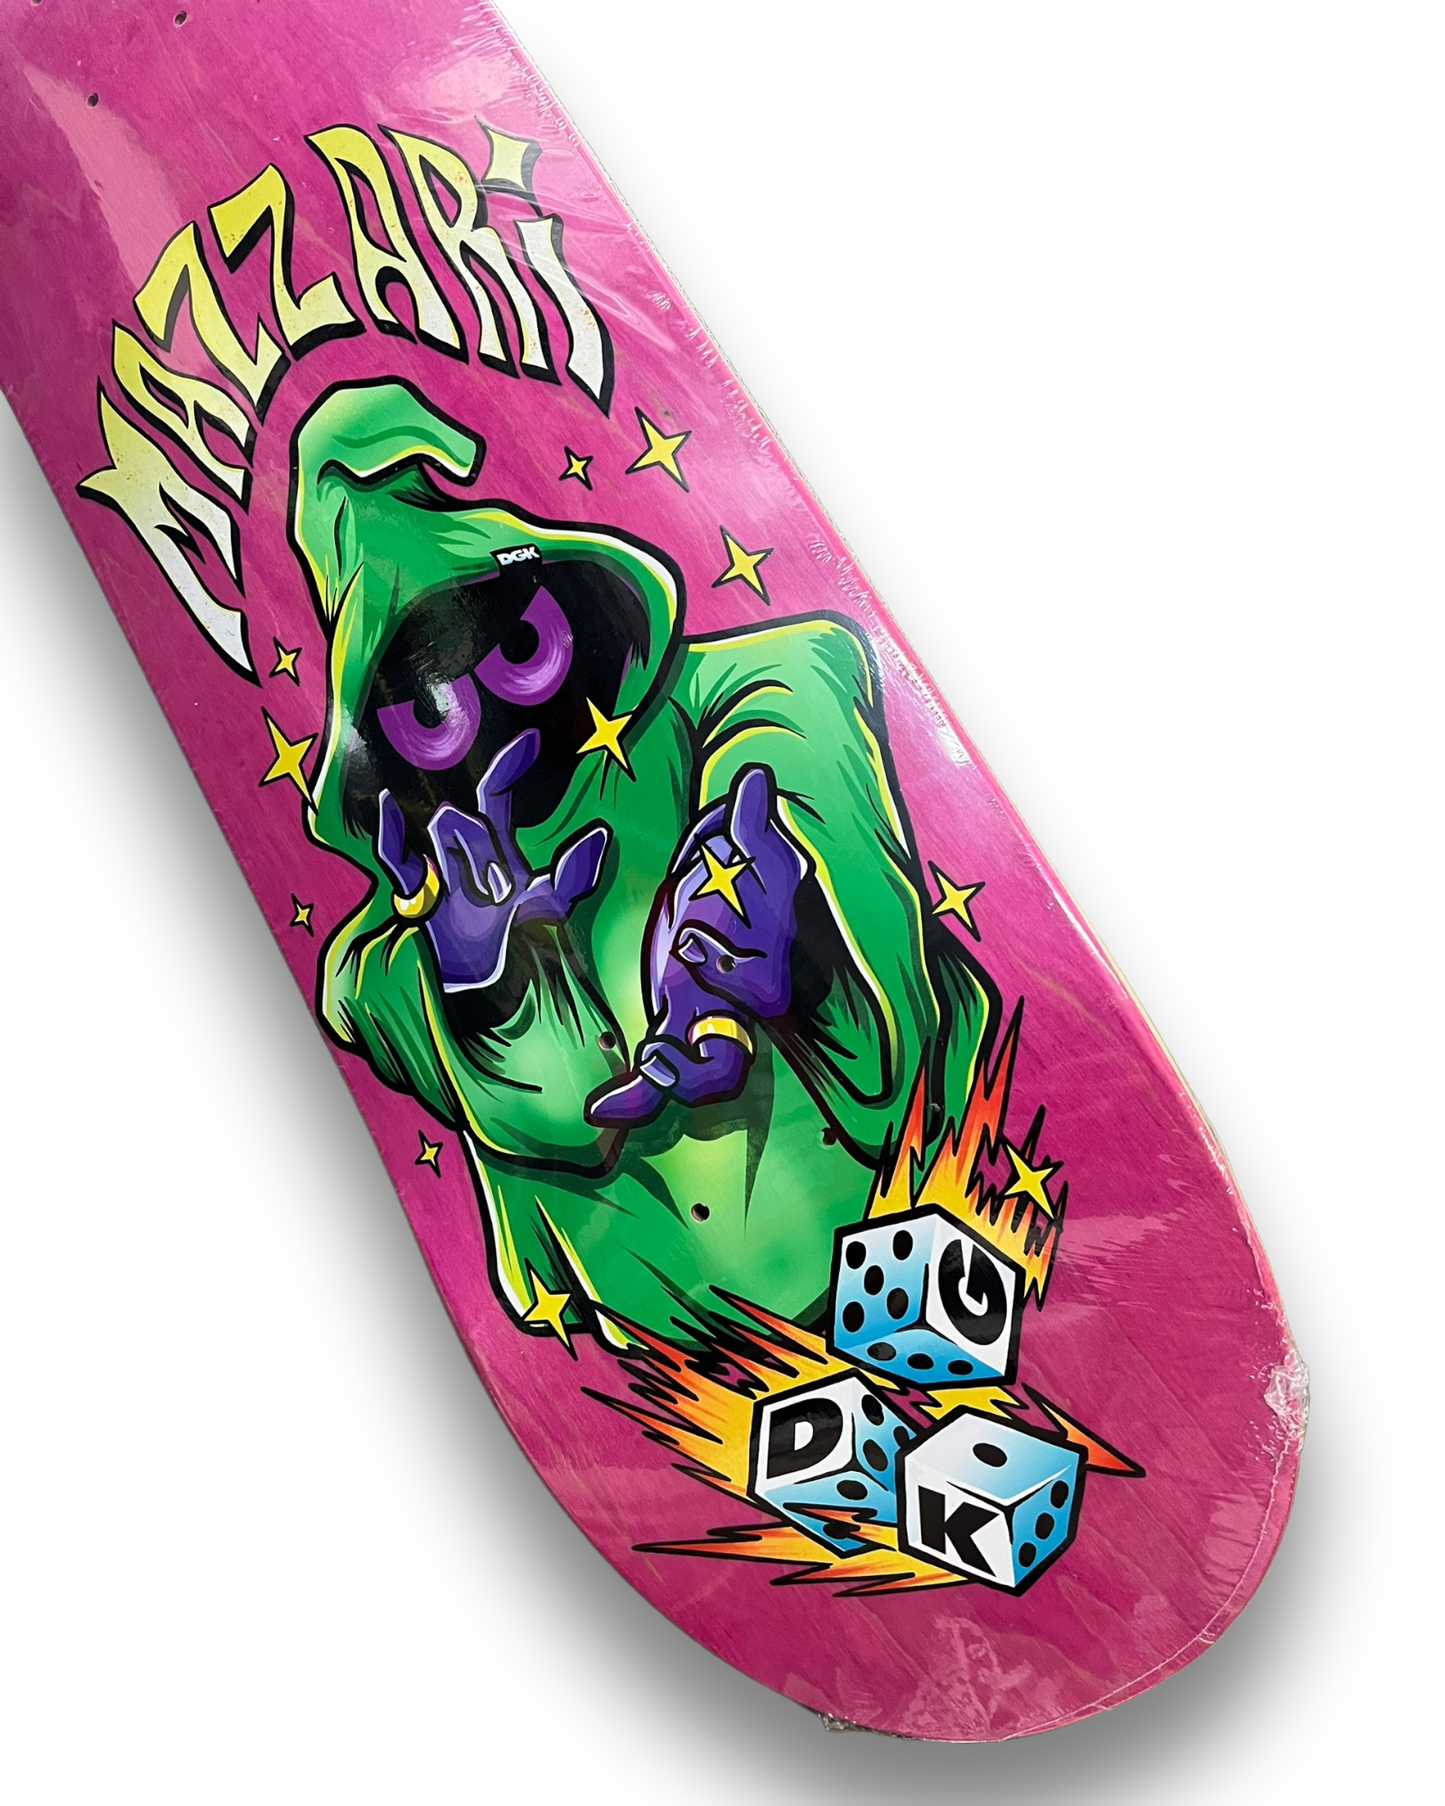 DGK | "Sorcery" Will Mazzari Pro Skateboard Deck | 8.38"